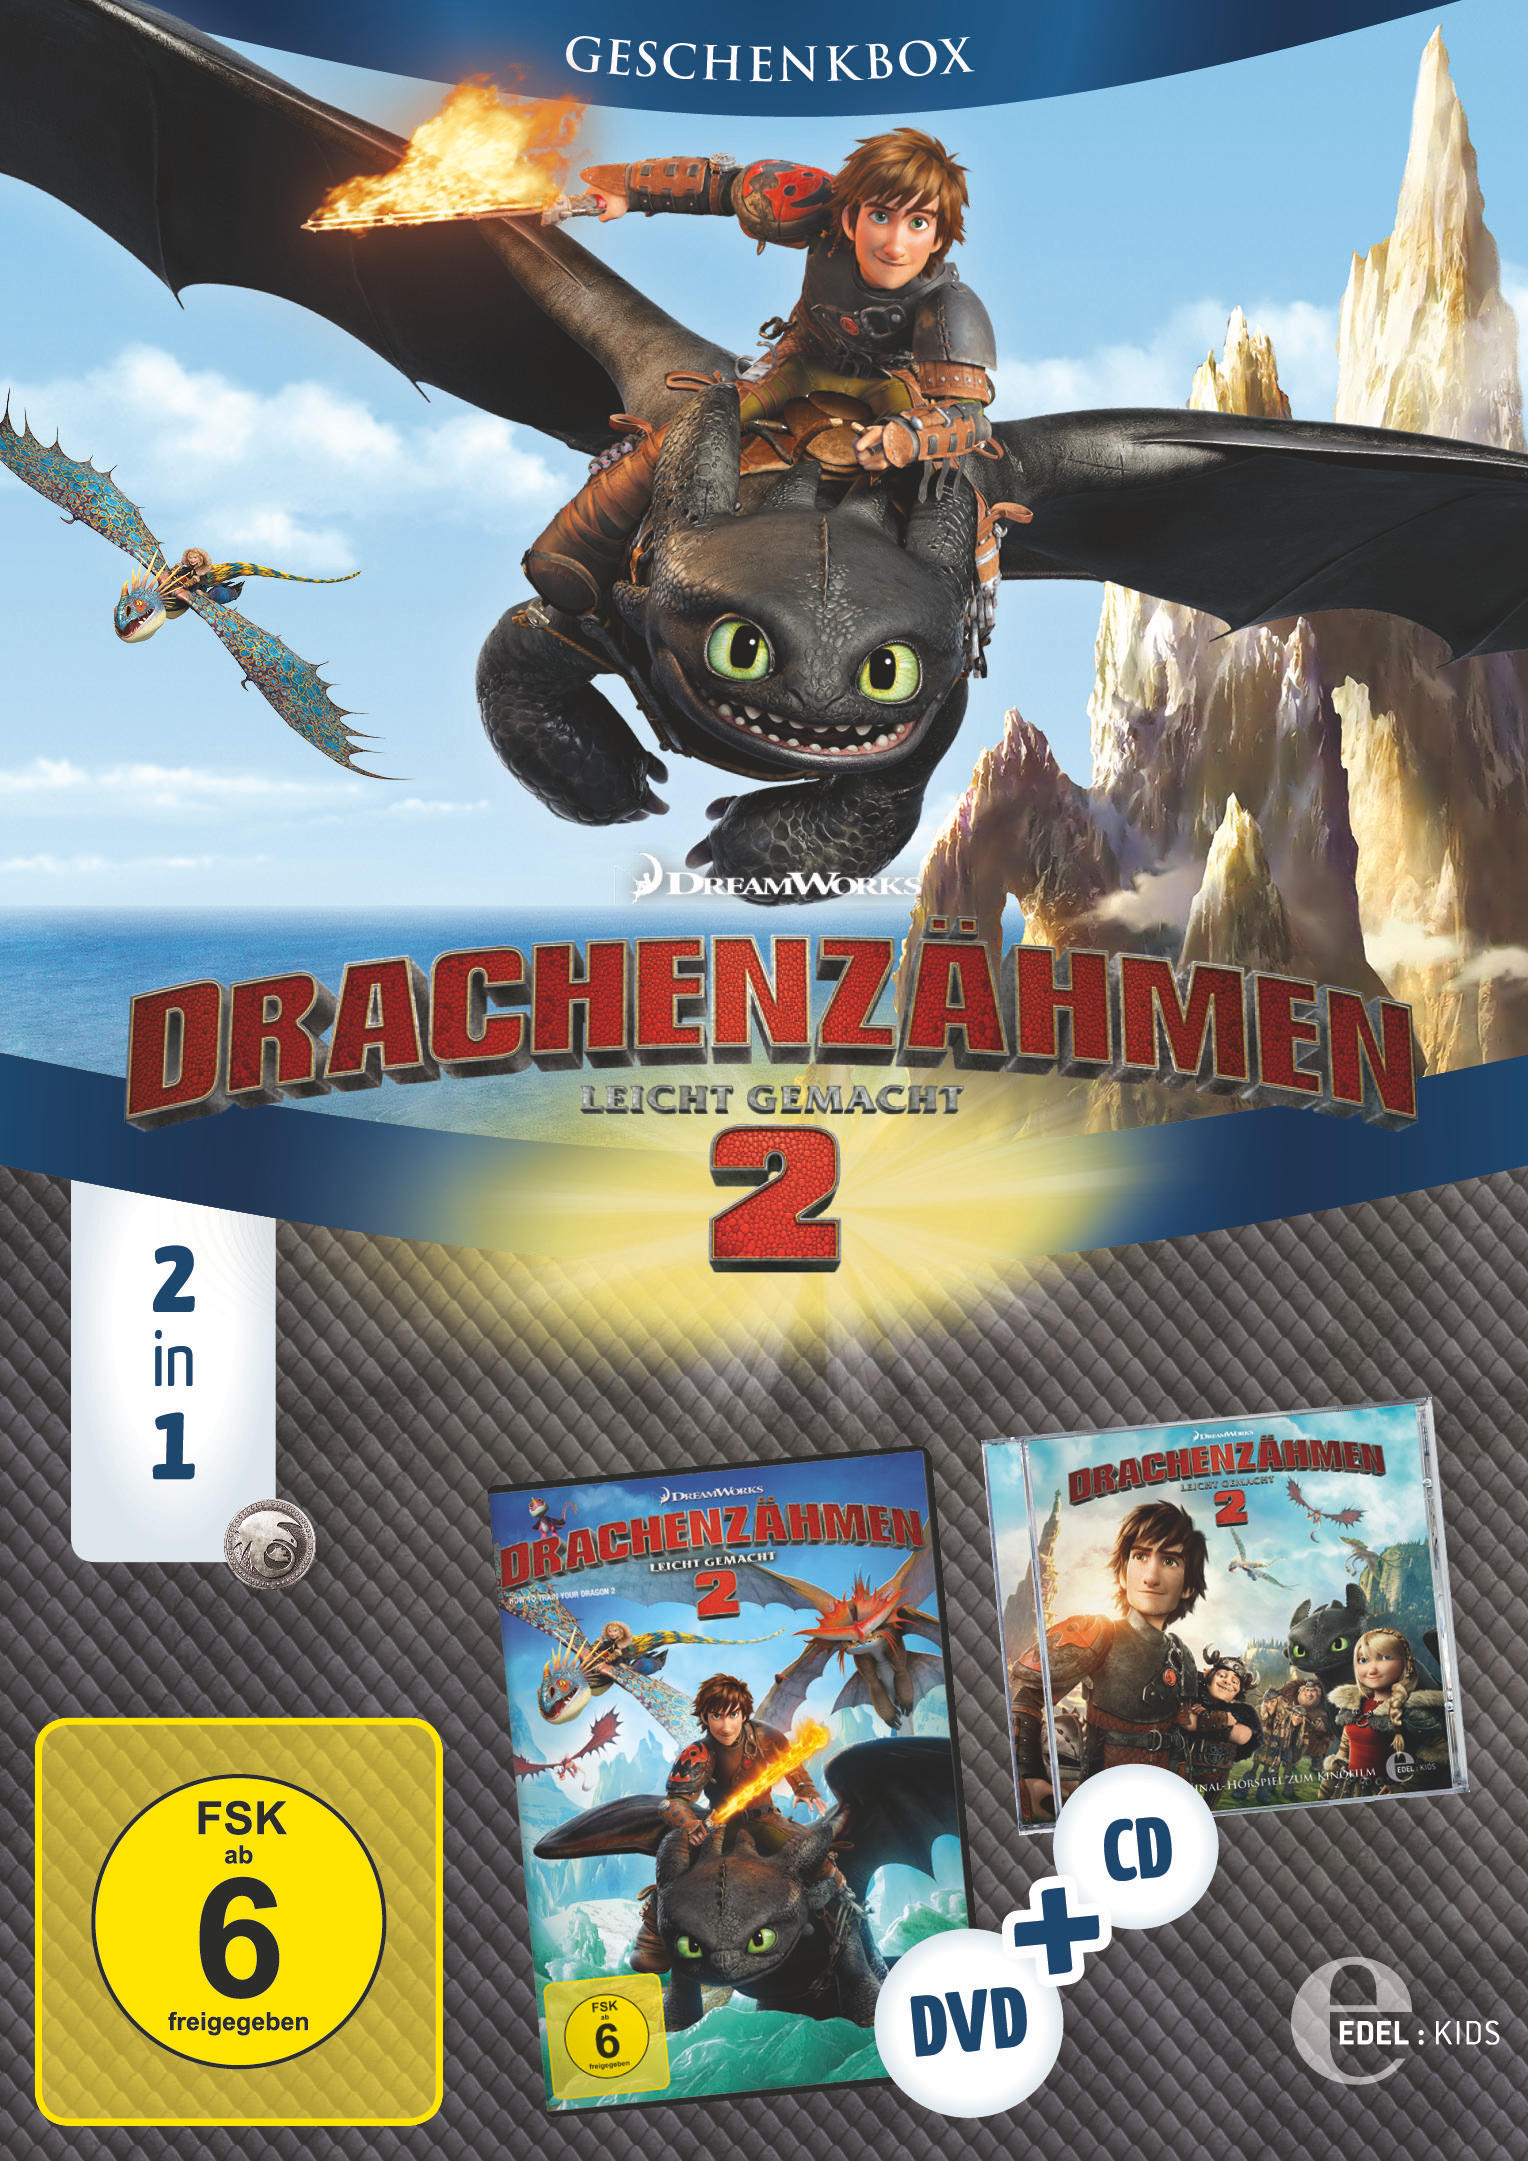 Drachenzähmen leicht gemacht 2 - Geschenkbox) Kinofilm DVD CD Hörspiel & 2in1 (Exklusive + zum Kinofilm